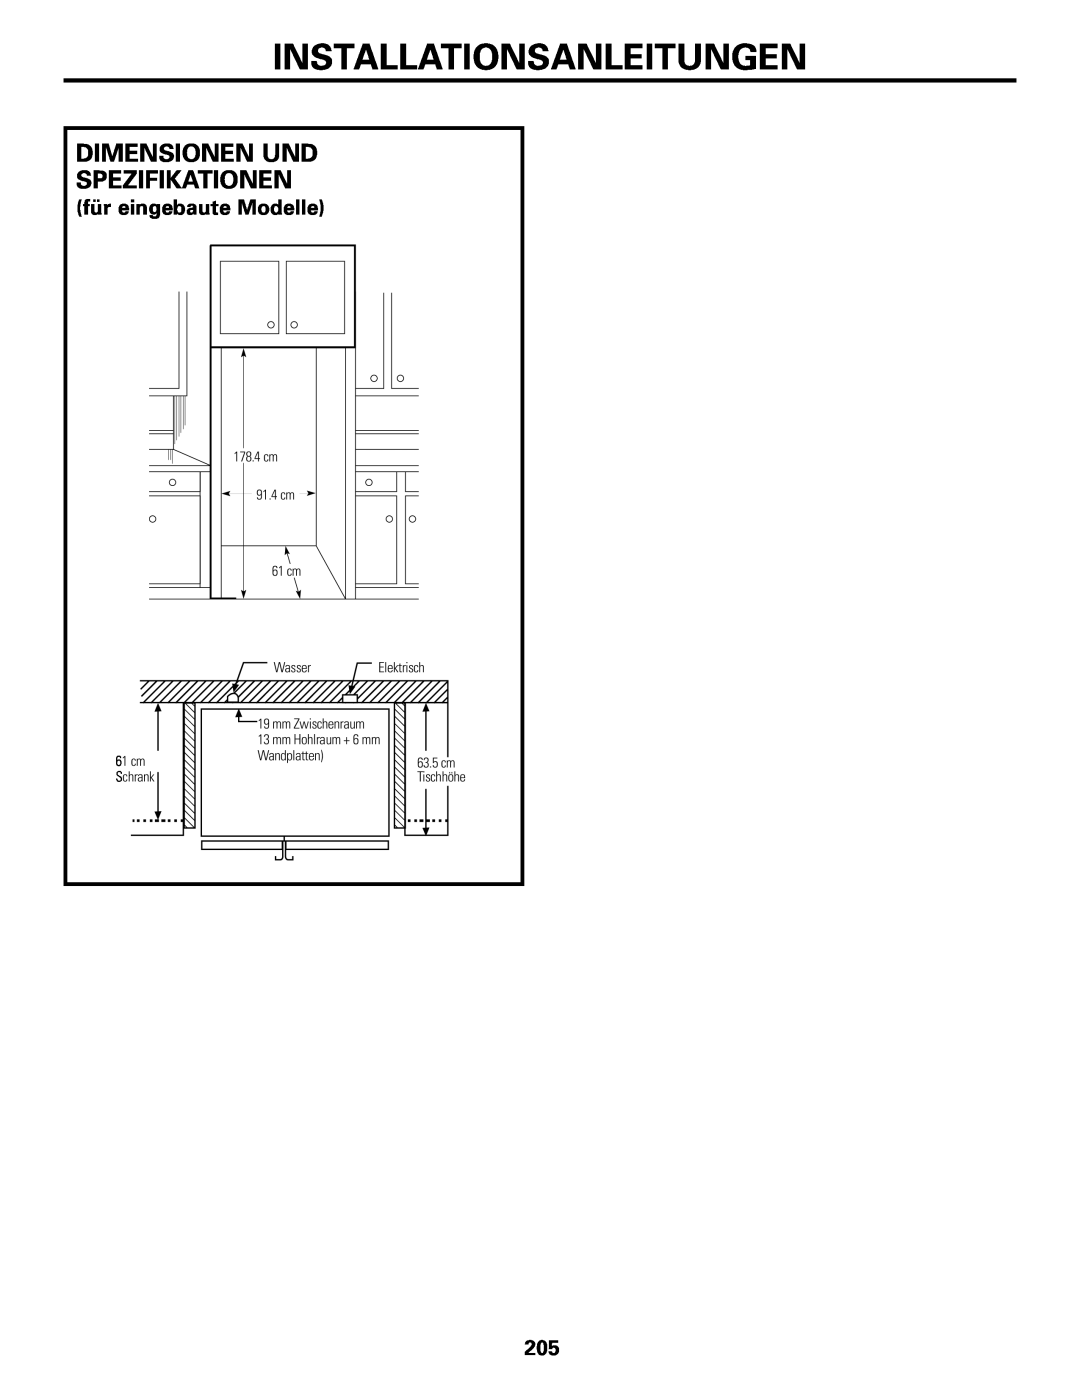 GE 21, 23, 25, 27, 29 Dimensionen Und Spezifikationen, für eingebaute Modelle, Installationsanleitungen, cm Schrank 